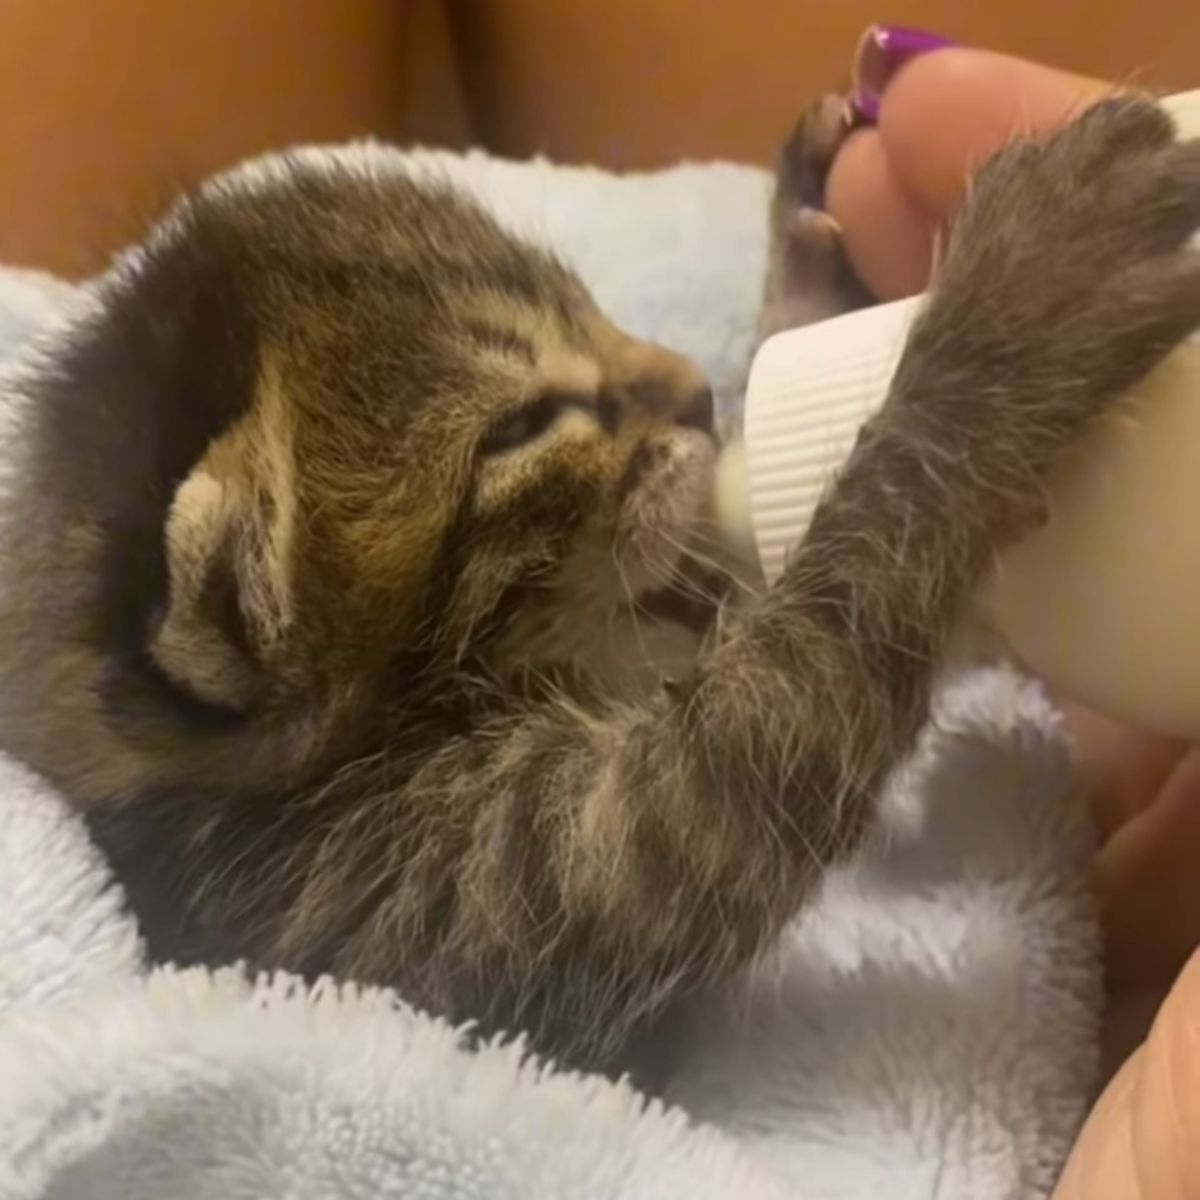 kitten drinking from a bottle